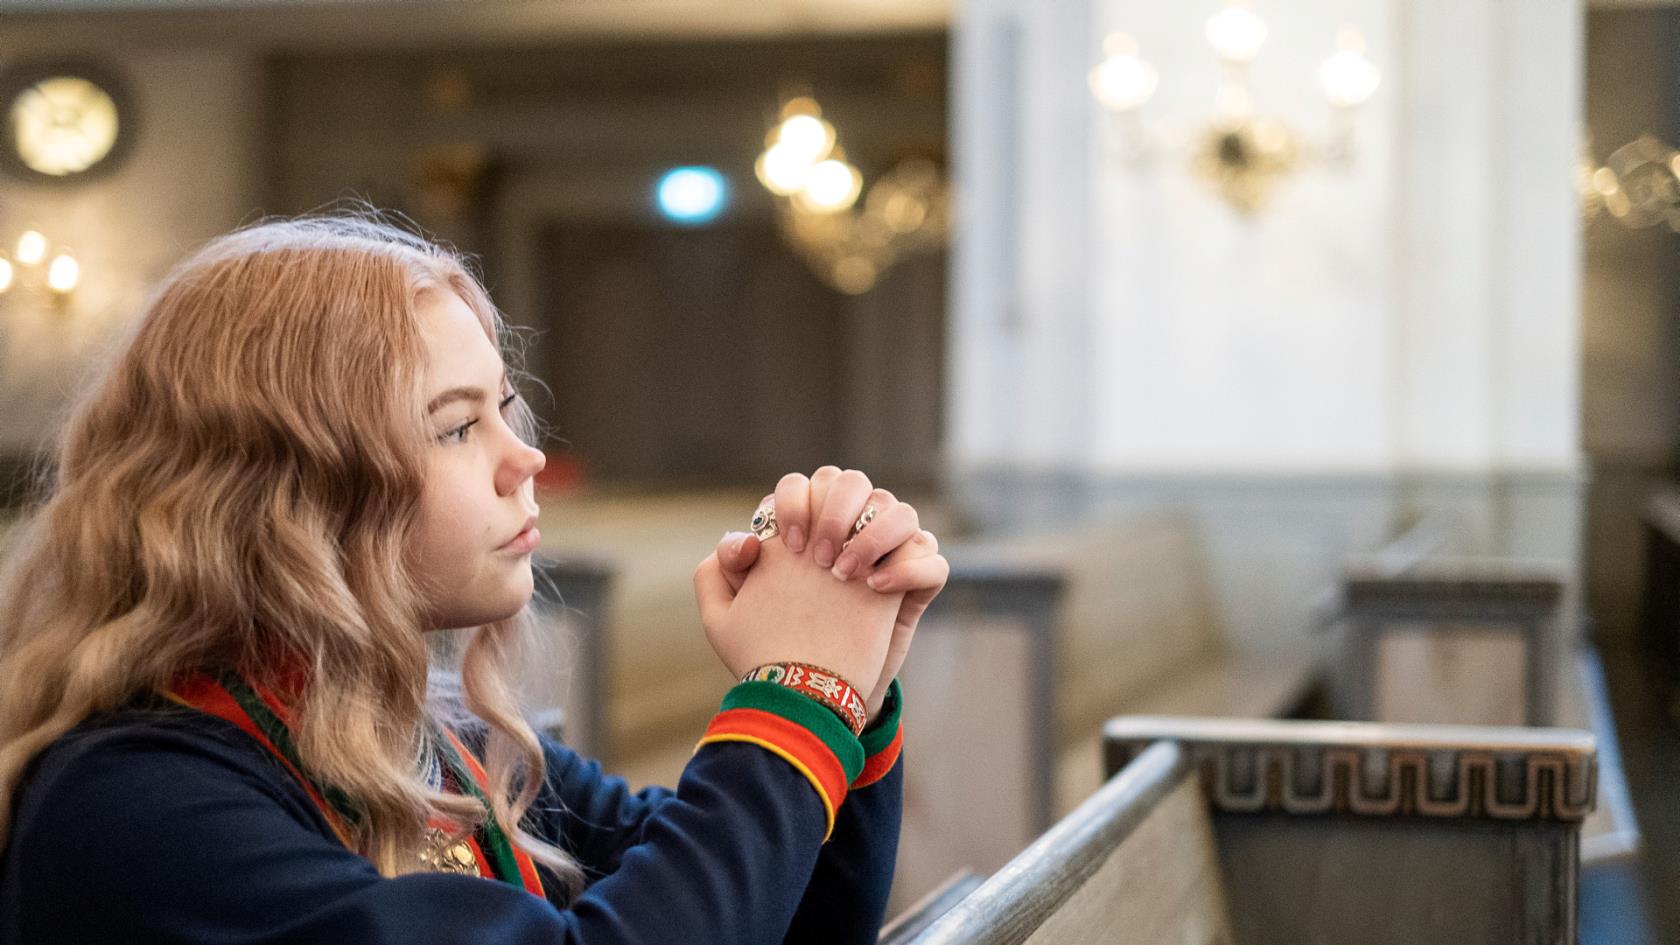 Flicka ber i kyrka och bär traditionella samekläder